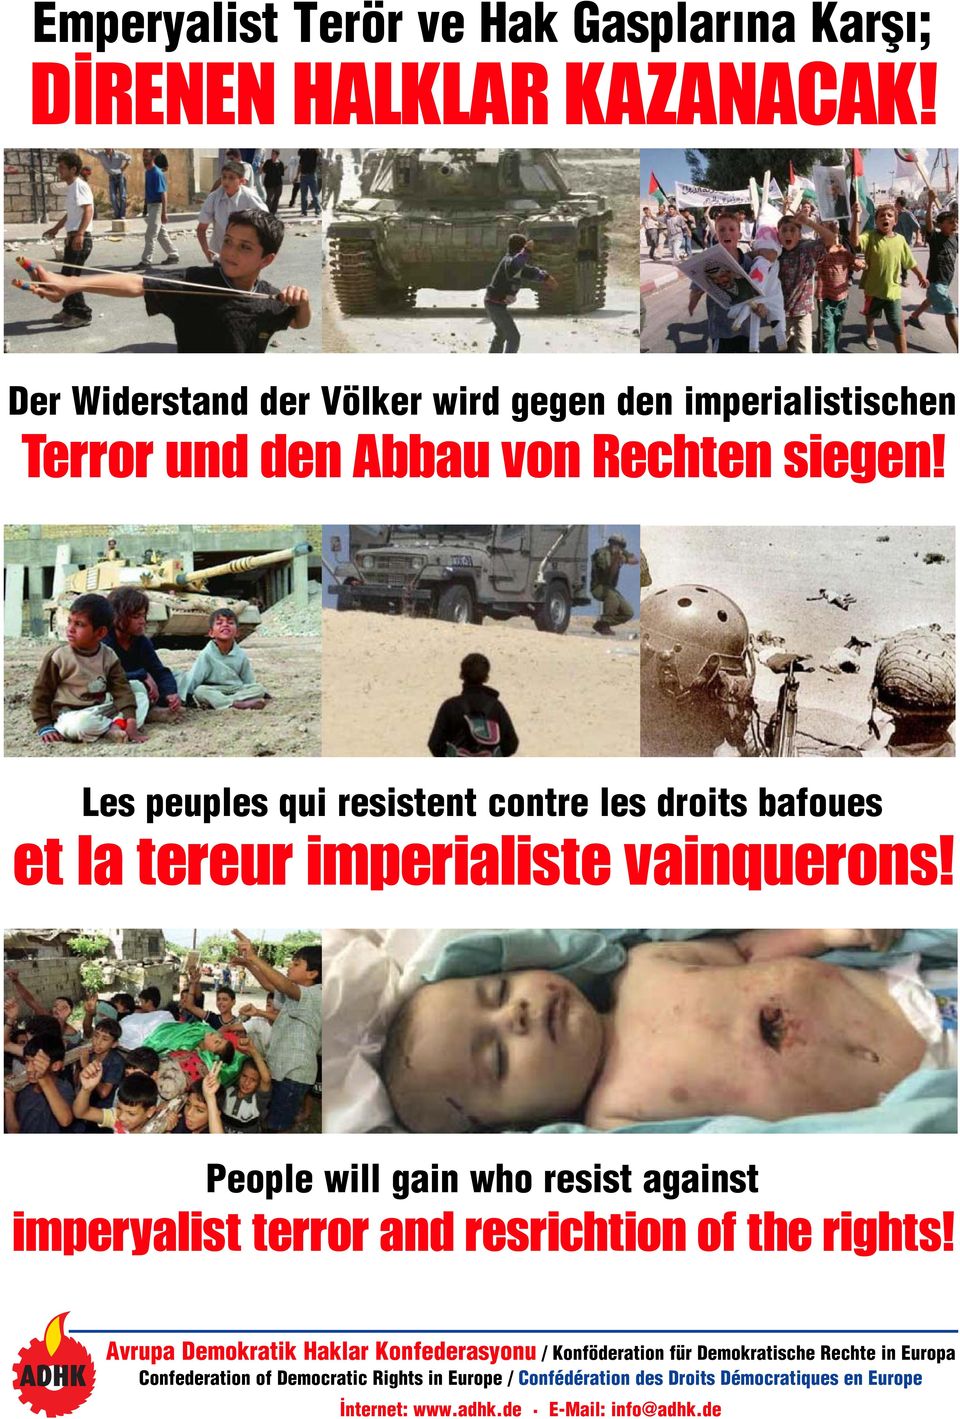 Les peuples qui resistent contre les droits bafoues et la tereur imperialiste vainquerons!